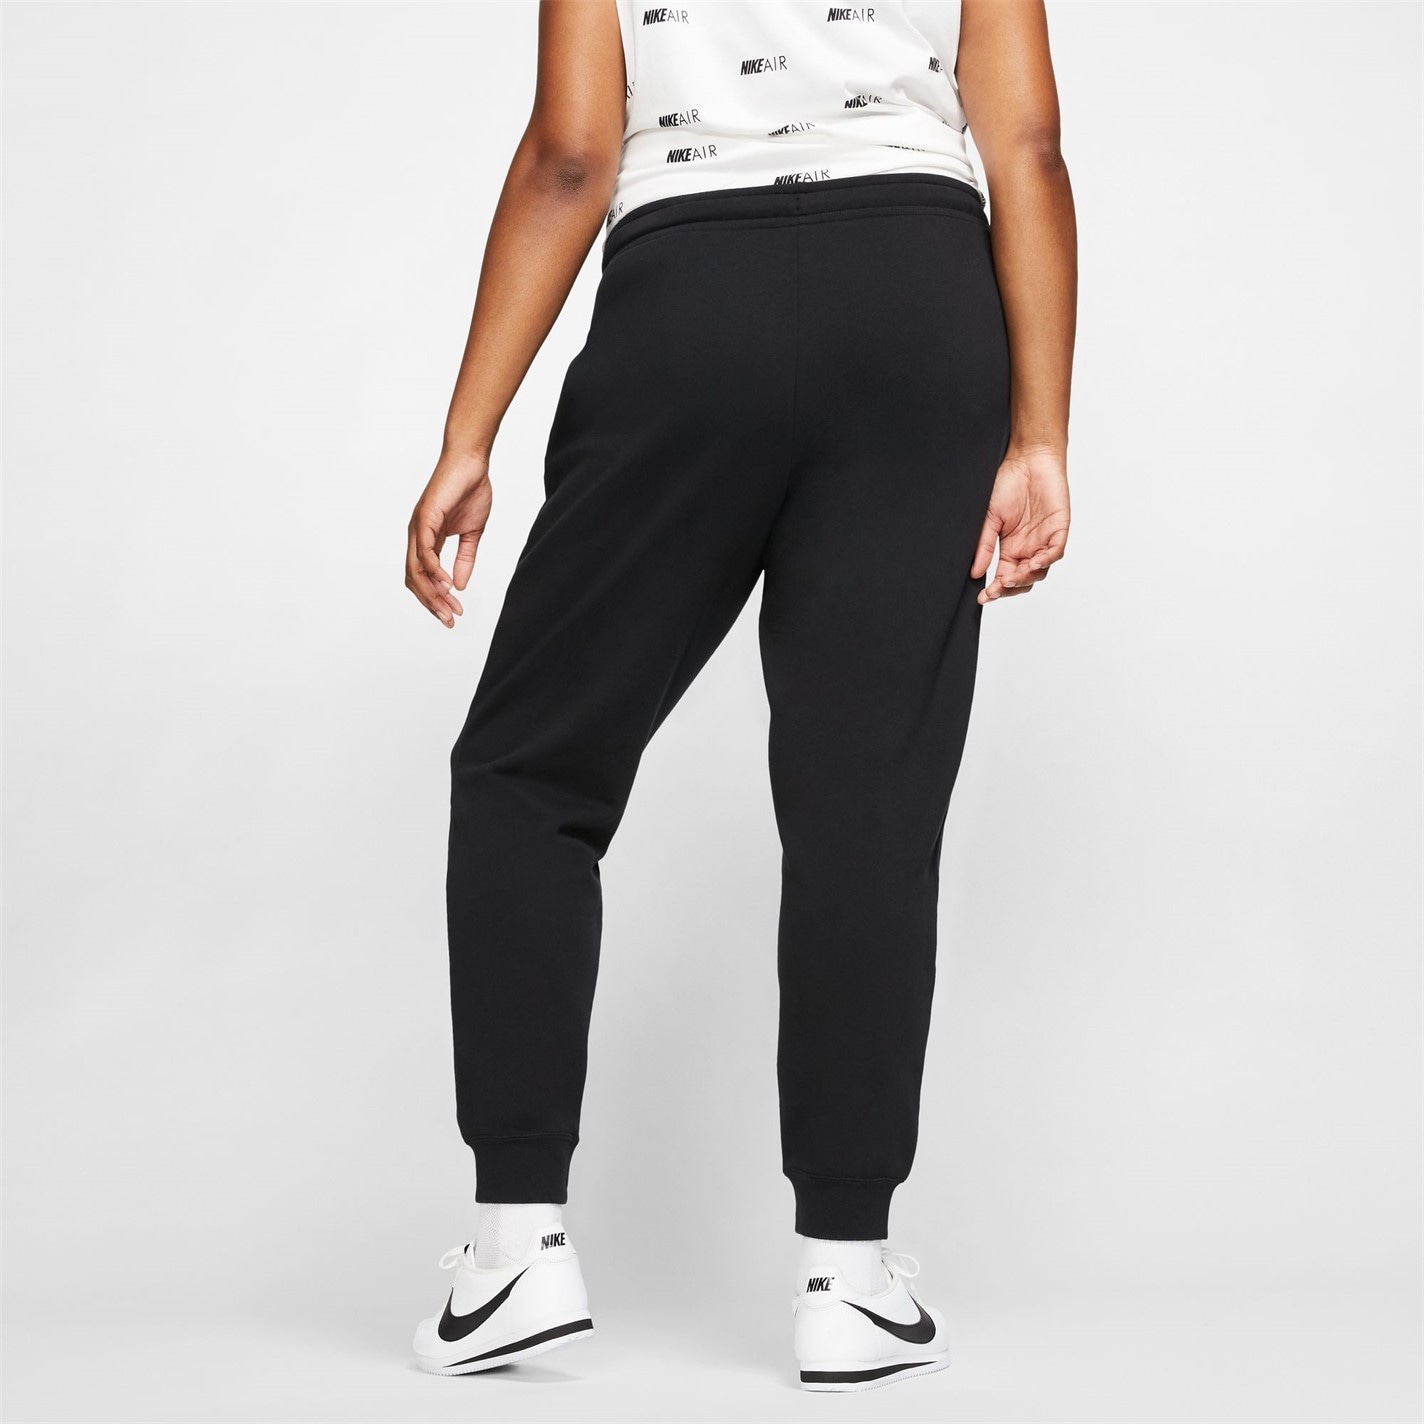 Pantaloni jogging Nike Air pentru femei negru alb